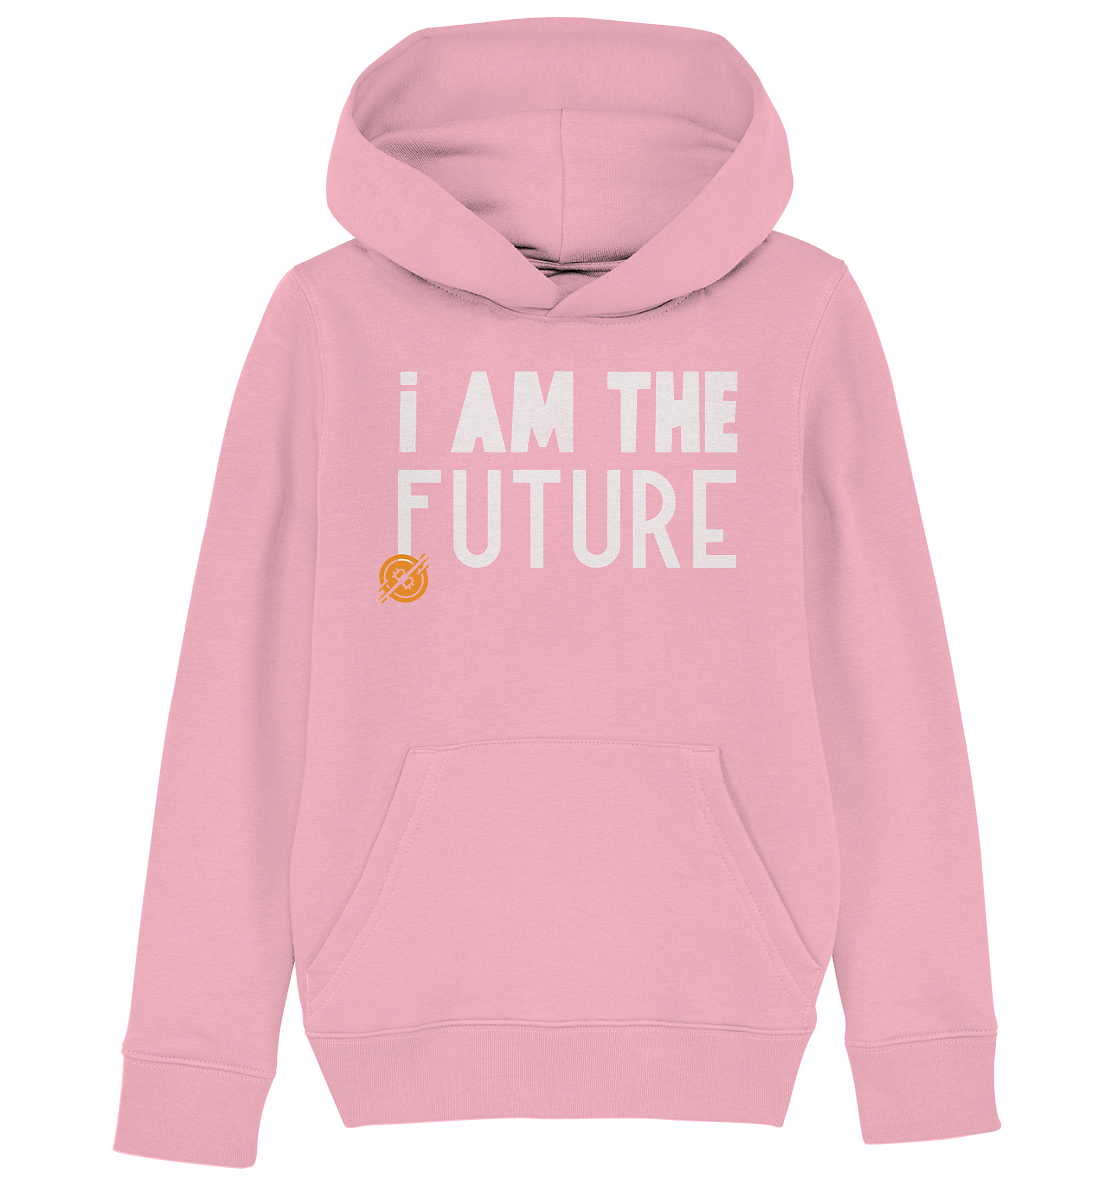 Bitcoin "I am the future" - Kids Organic Hoodie